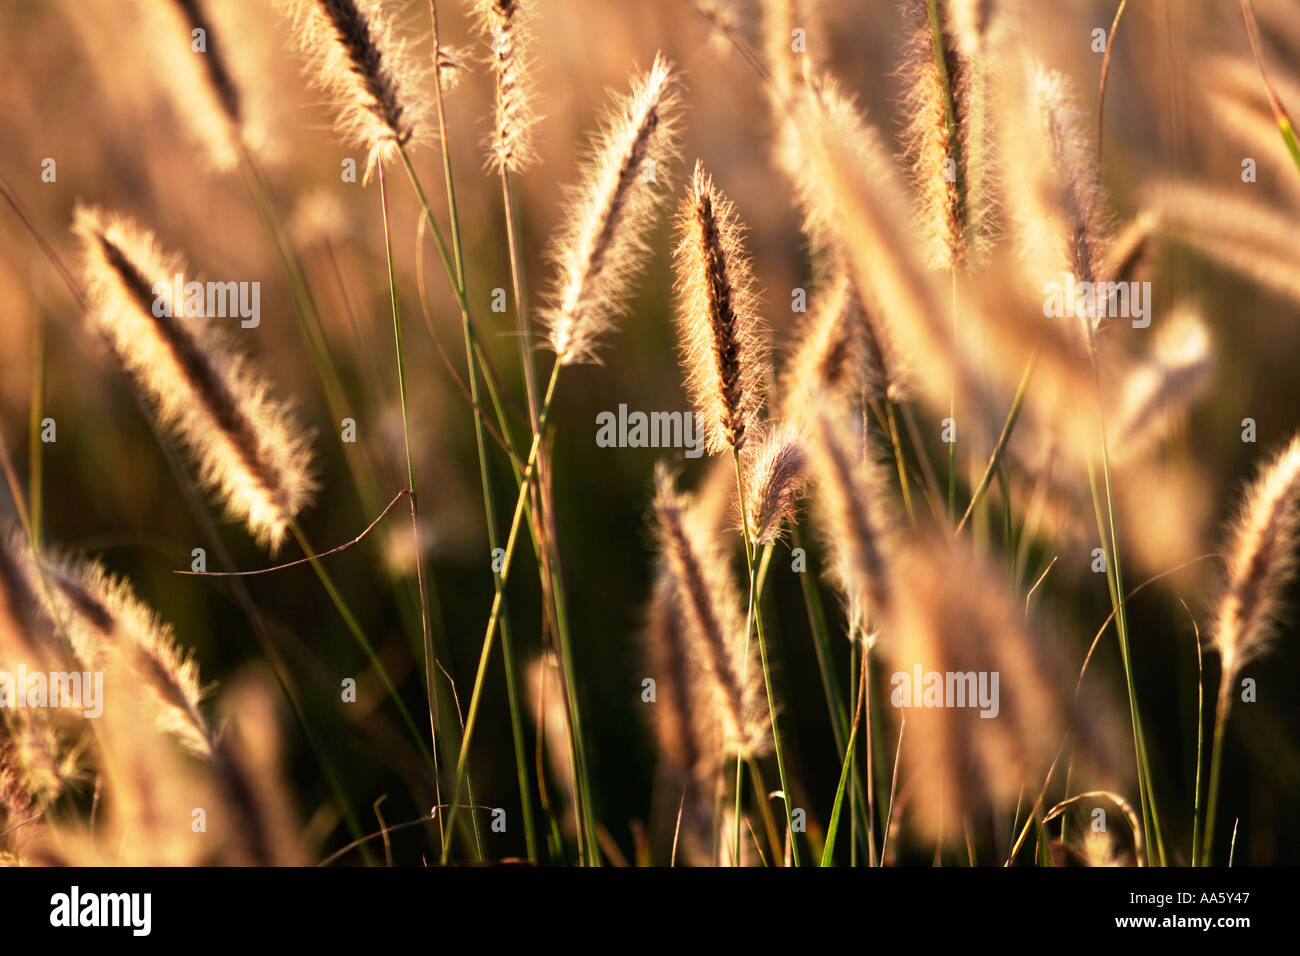 Evening sunlight through Foxtail Blue Buffel Grass Stock Photo